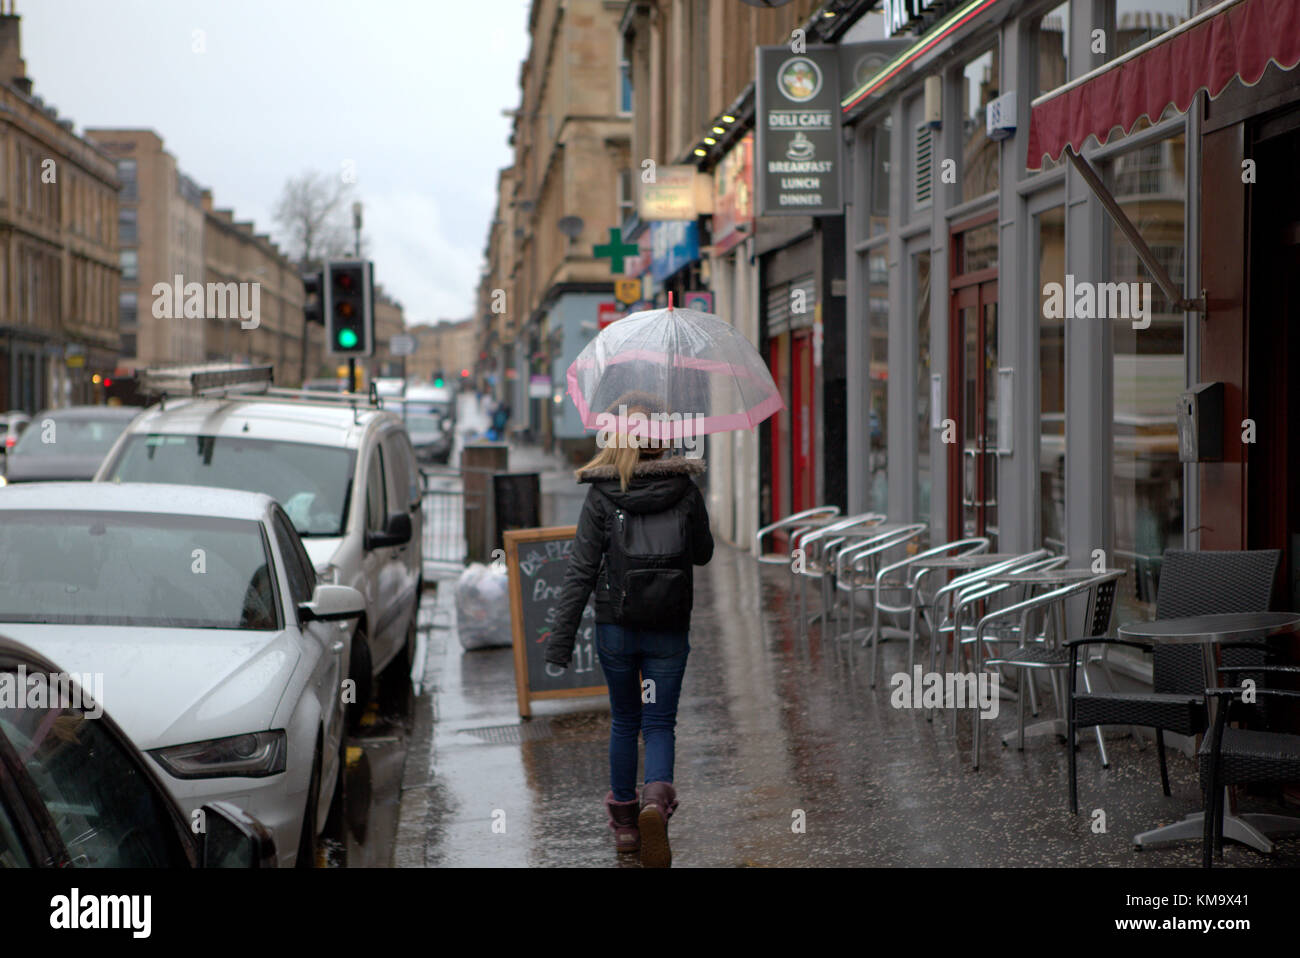 Ragazza con ombrello Rainy day wet Argyle street per finnieston, glasgow, Regno Unito Foto Stock